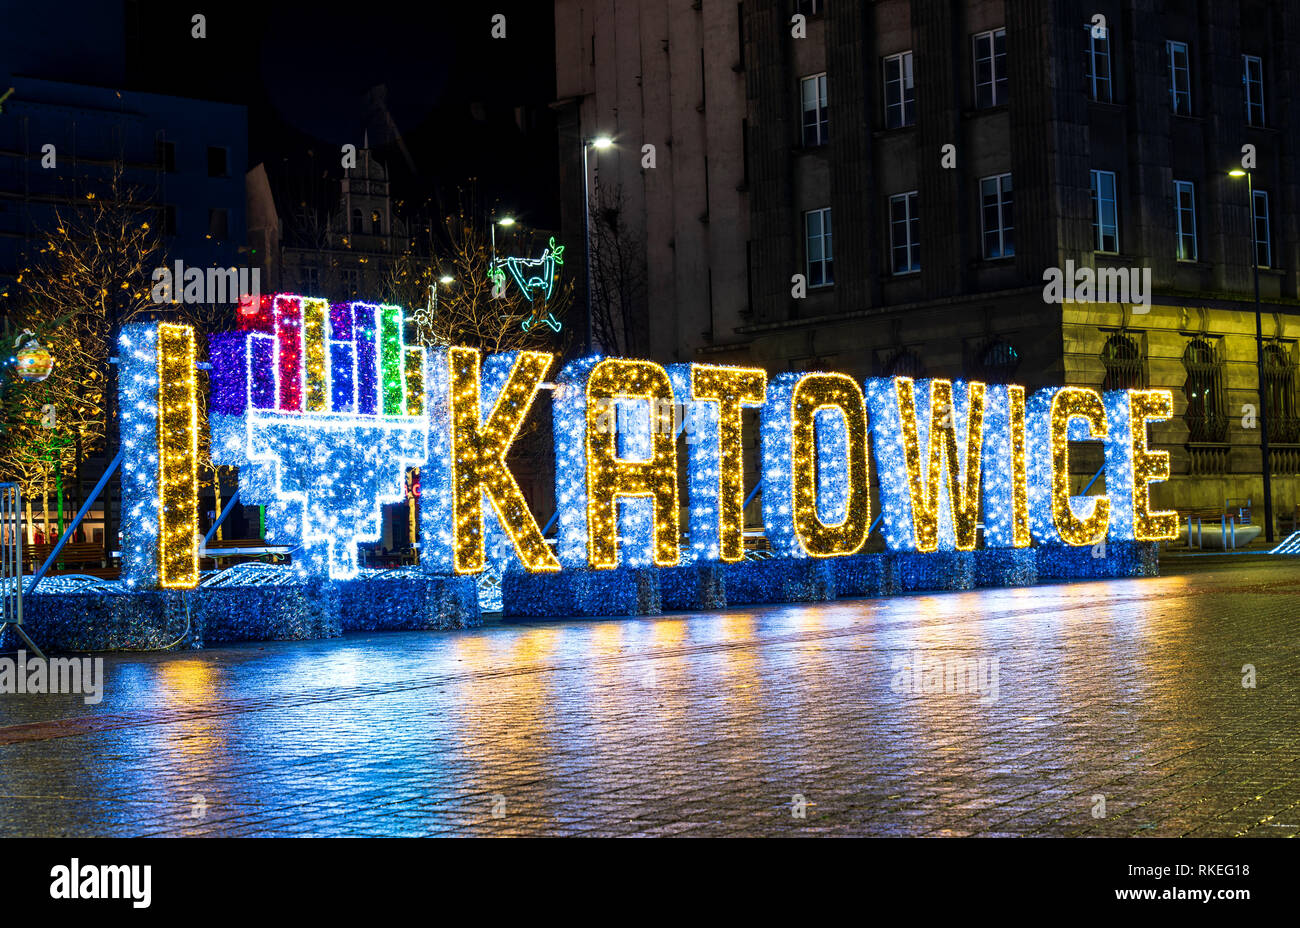 Katowice, Pologne - 1 janvier 2019 : J'adore Katowice signer dans la ville centre-ville illuminée la nuit Banque D'Images